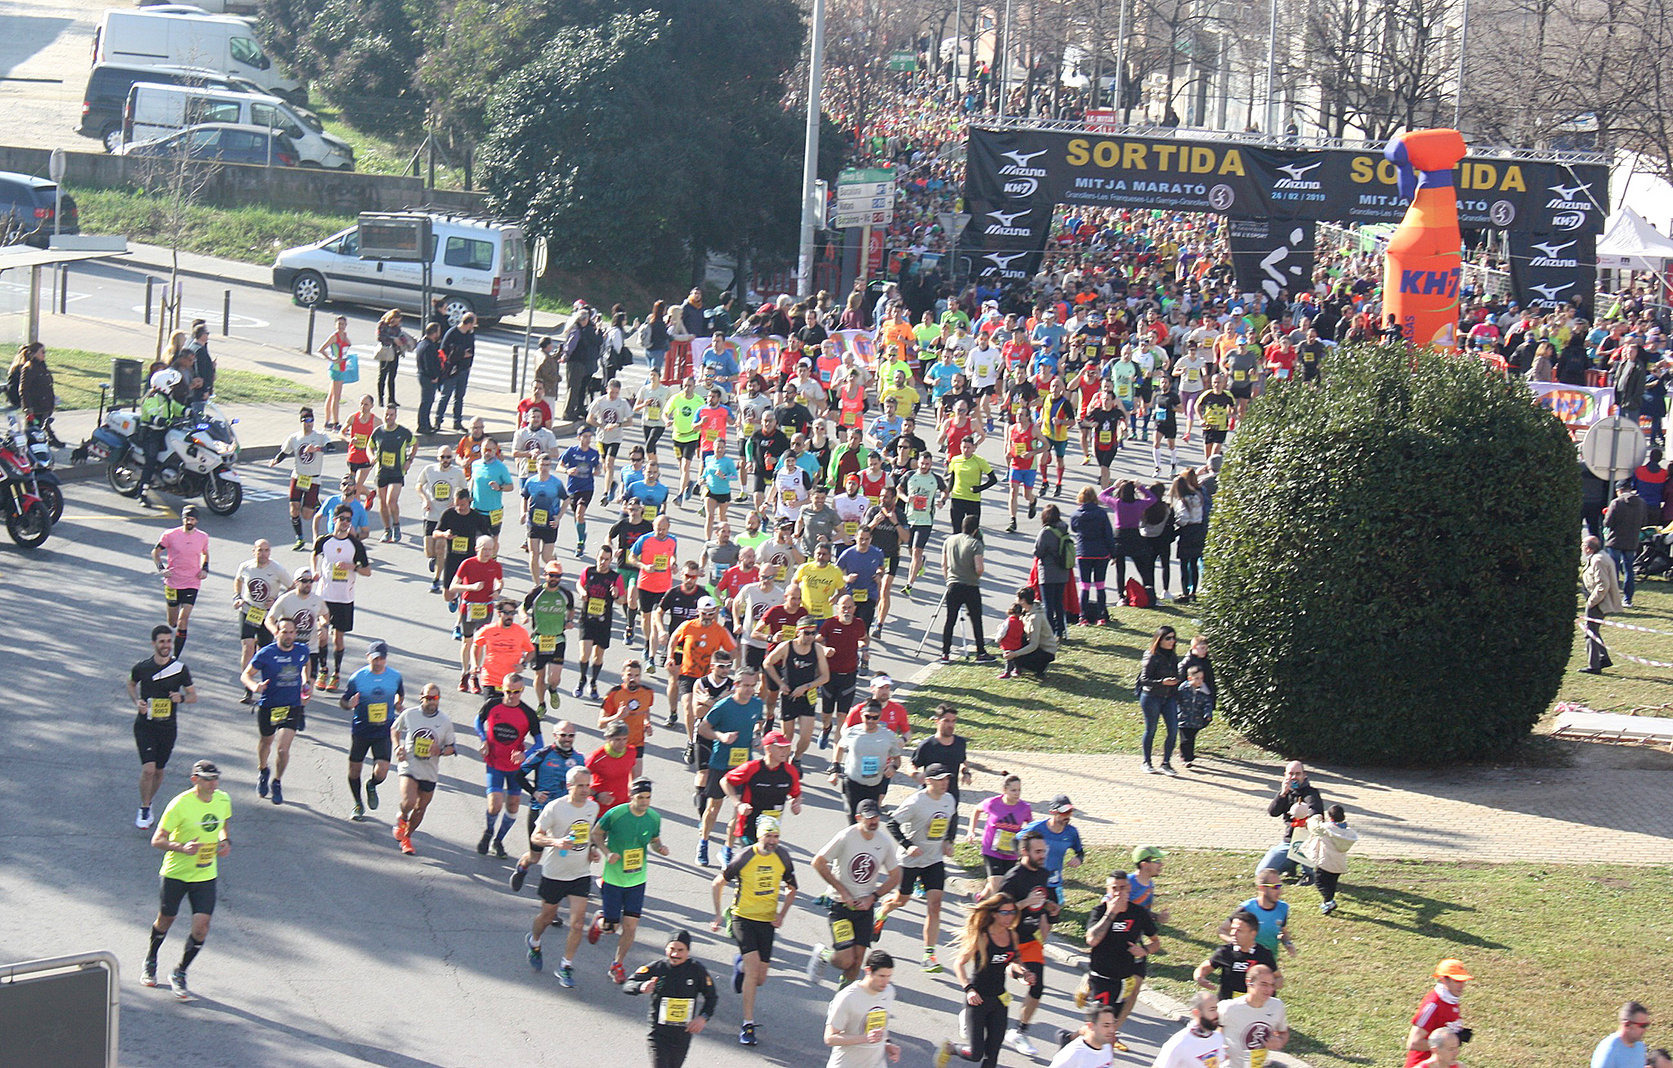 La sortida de la cursa, un de les imatges destacades de la Mitja Marató, que arriba a la 34a edició